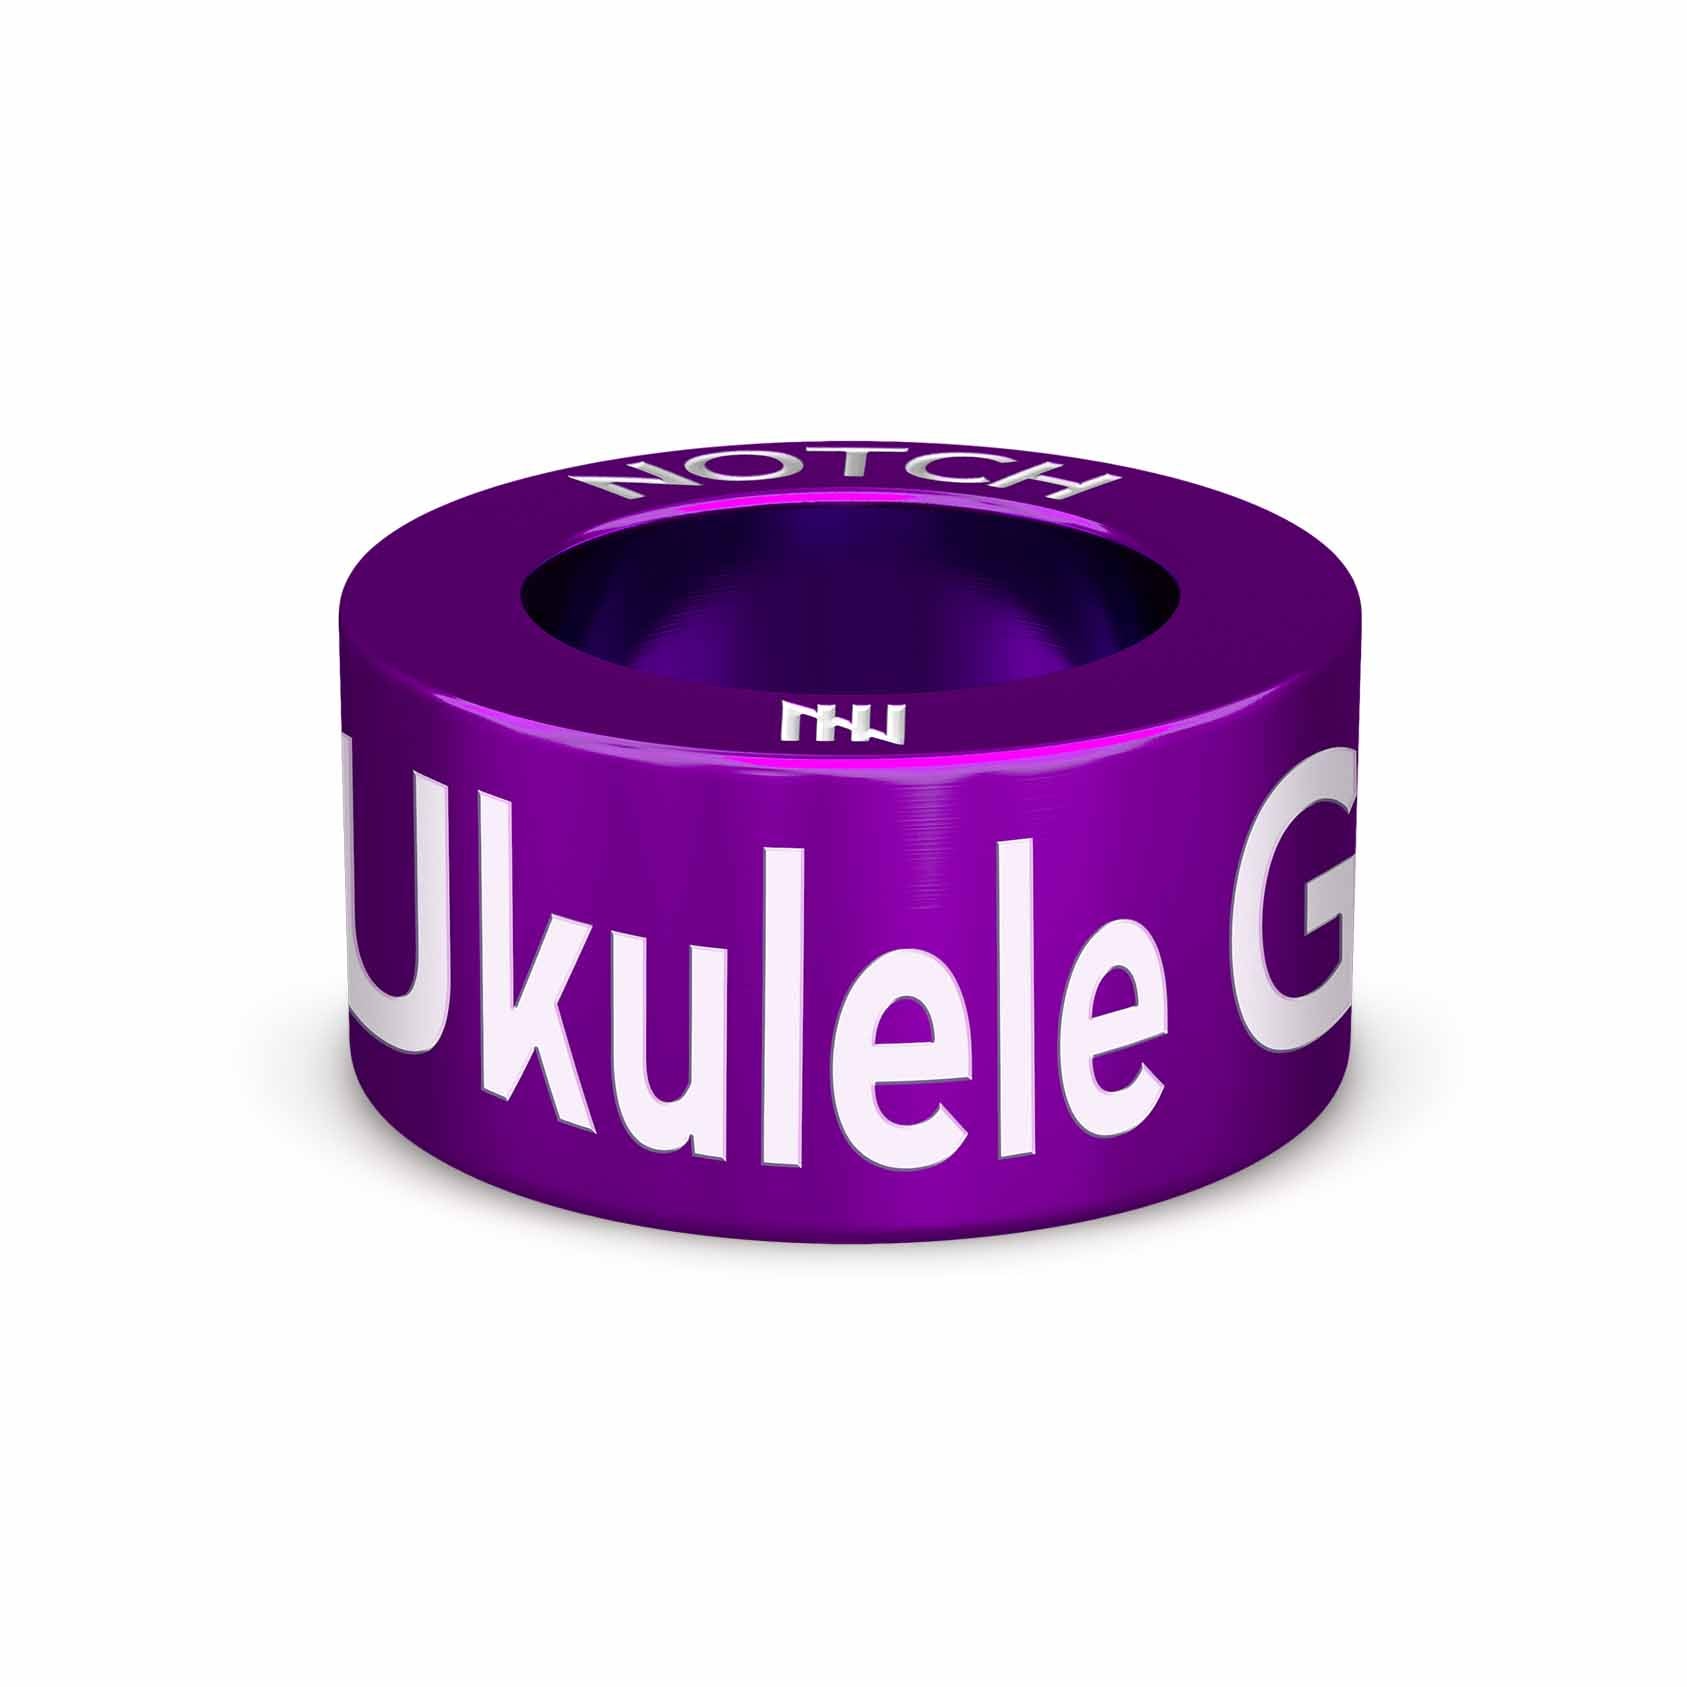 Ukulele Grades NOTCH Charm (Full List)